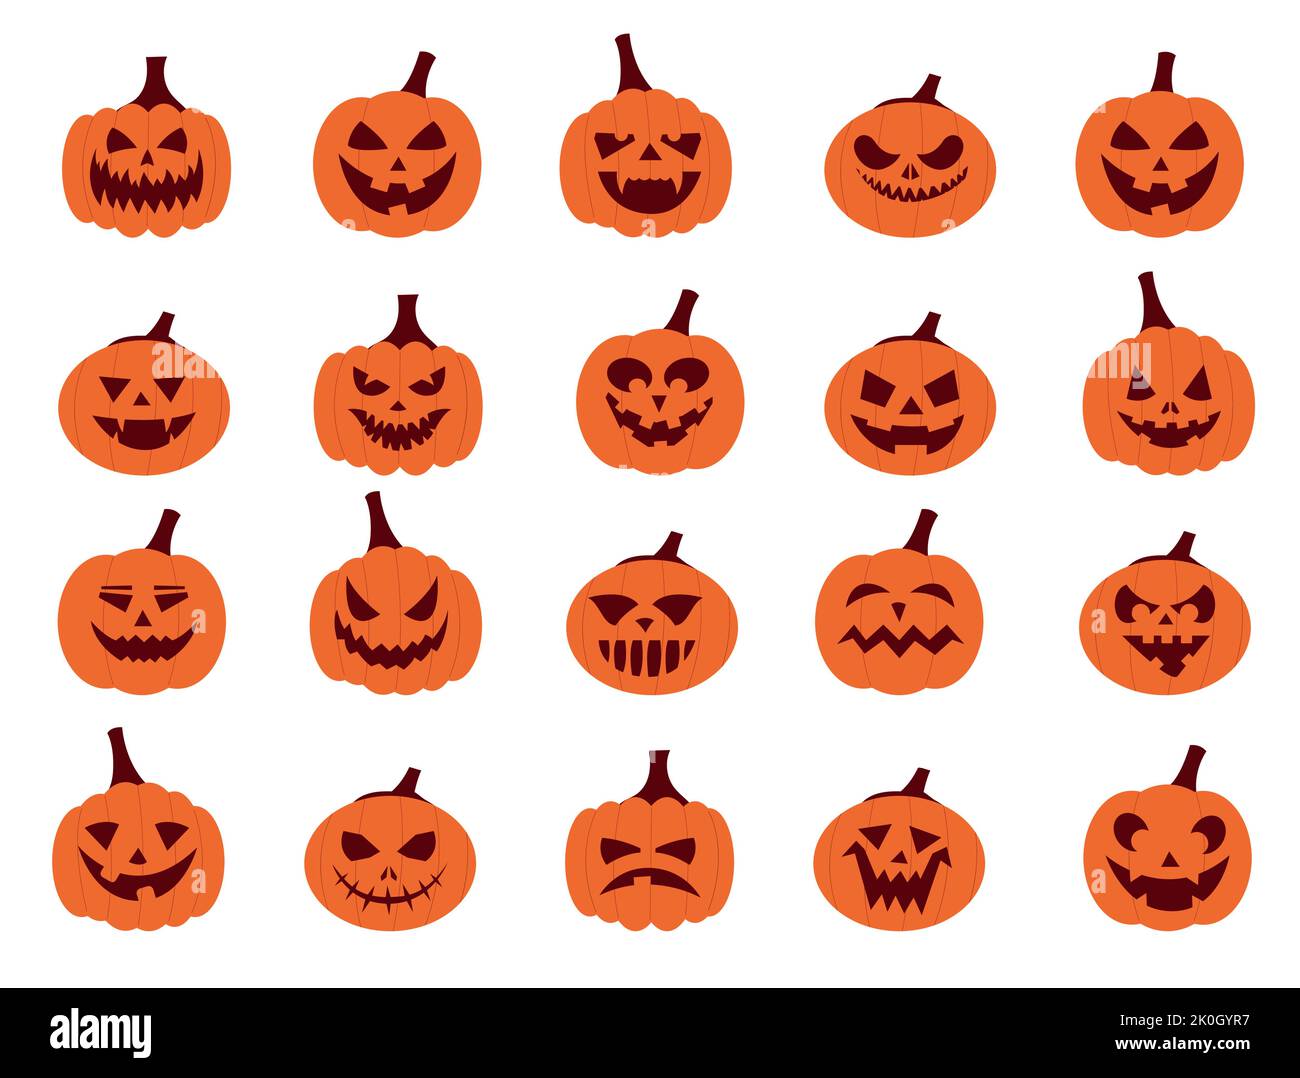 Kürbisgesichter. Cartoon Halloween Jack Figuren mit gruseligen wütenden Gesichtern, Gemüseschnitzereien für Horror Party Poster. Vector Halloween-Set Stock Vektor